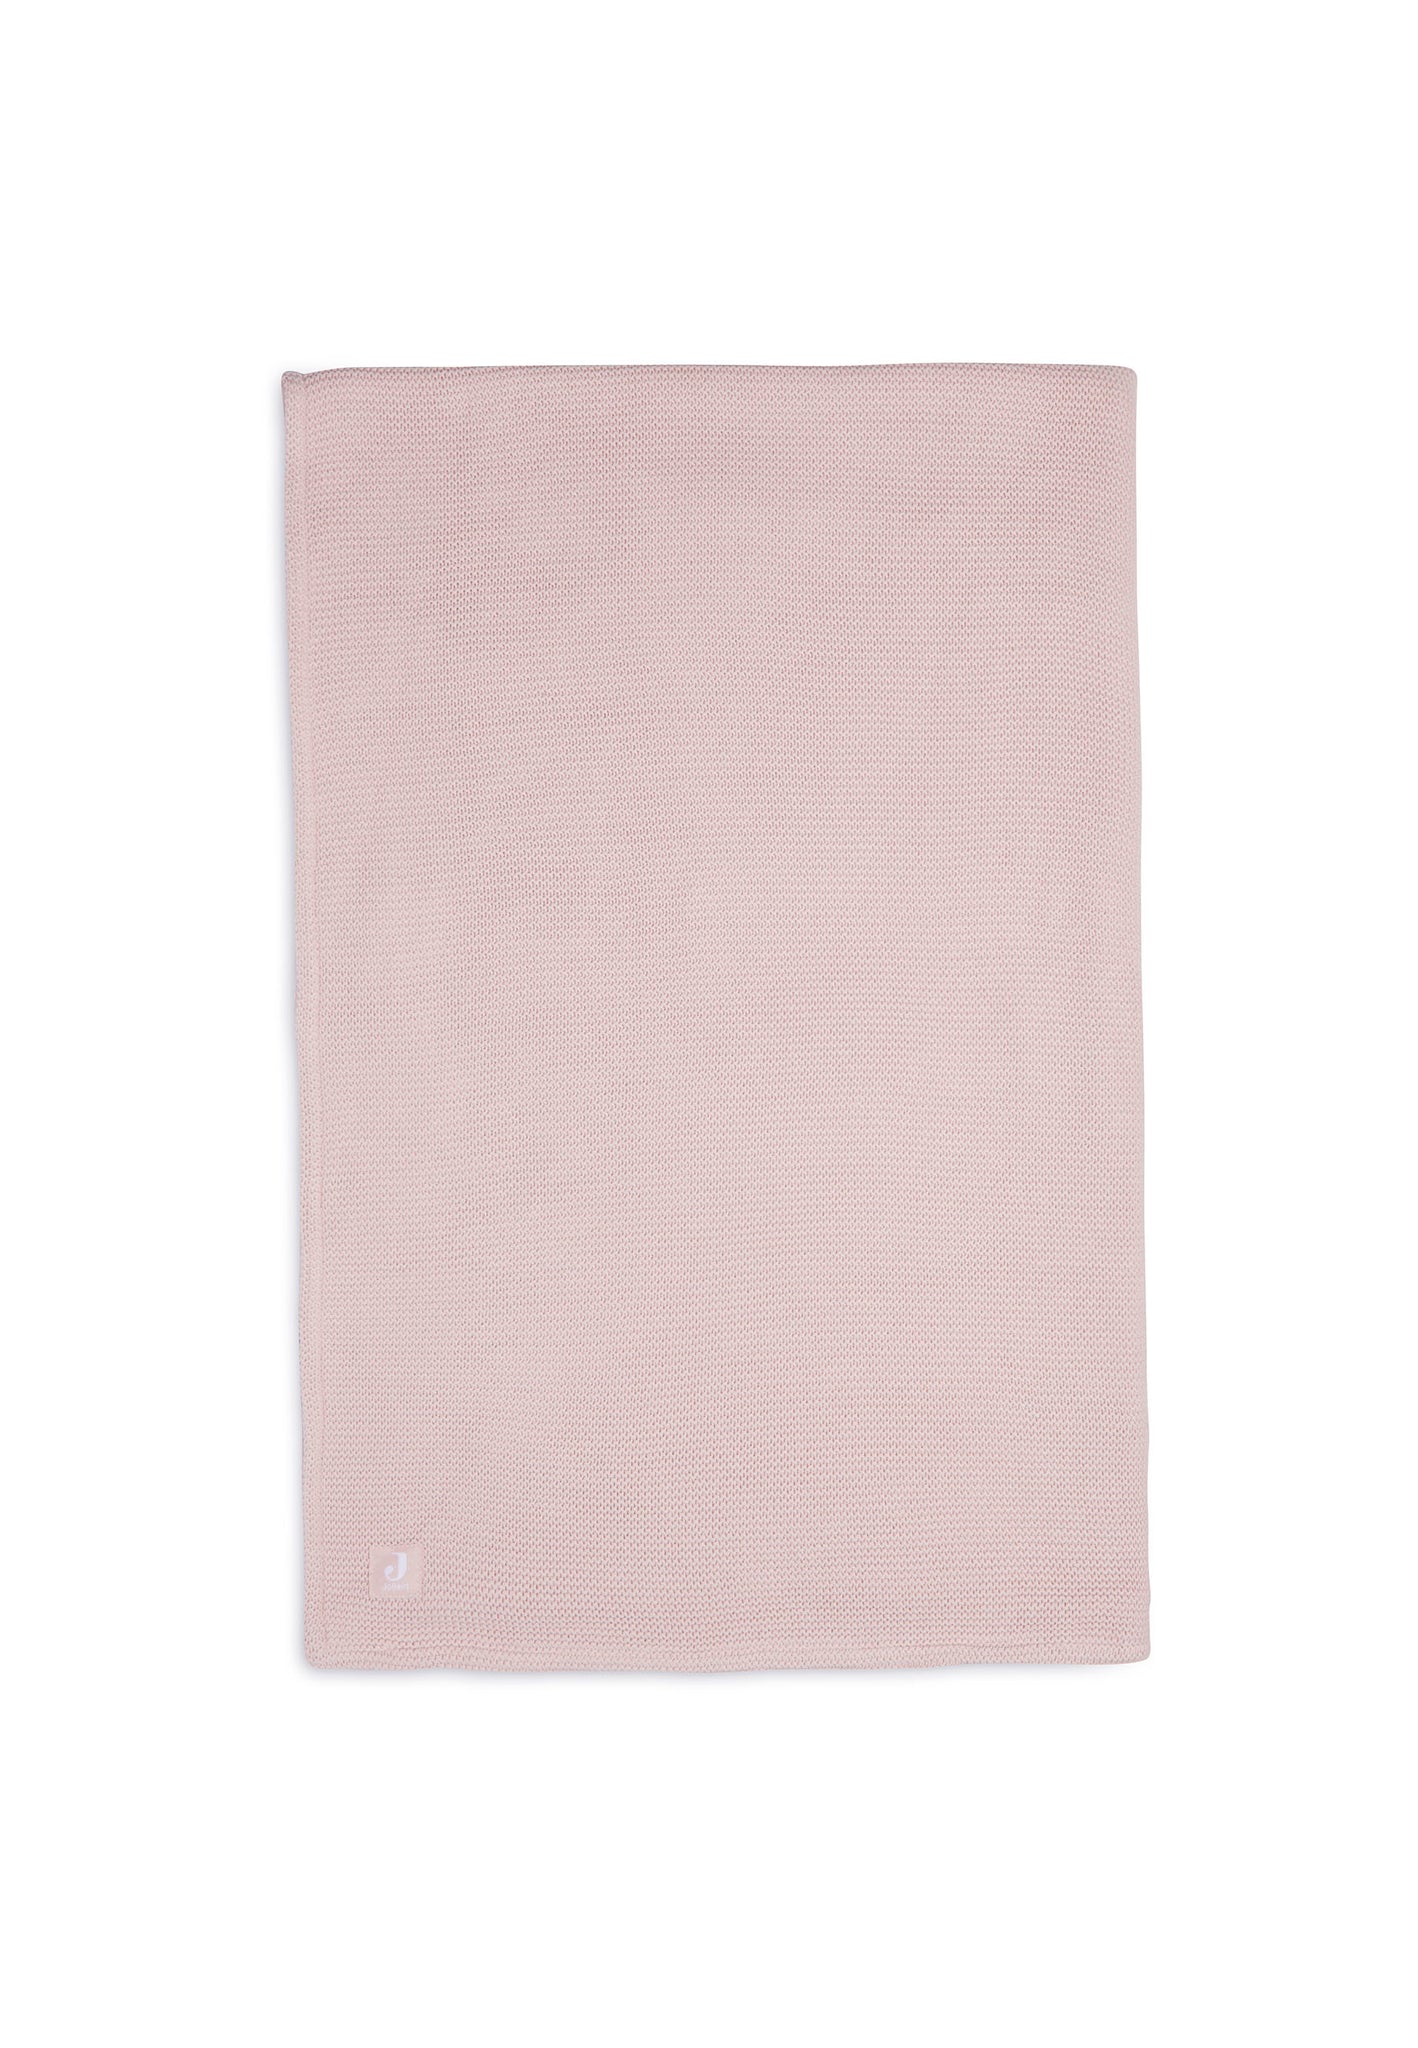 Jollein - Deken Wieg 75x100cm Basic Knit Pale Pink/Fleece